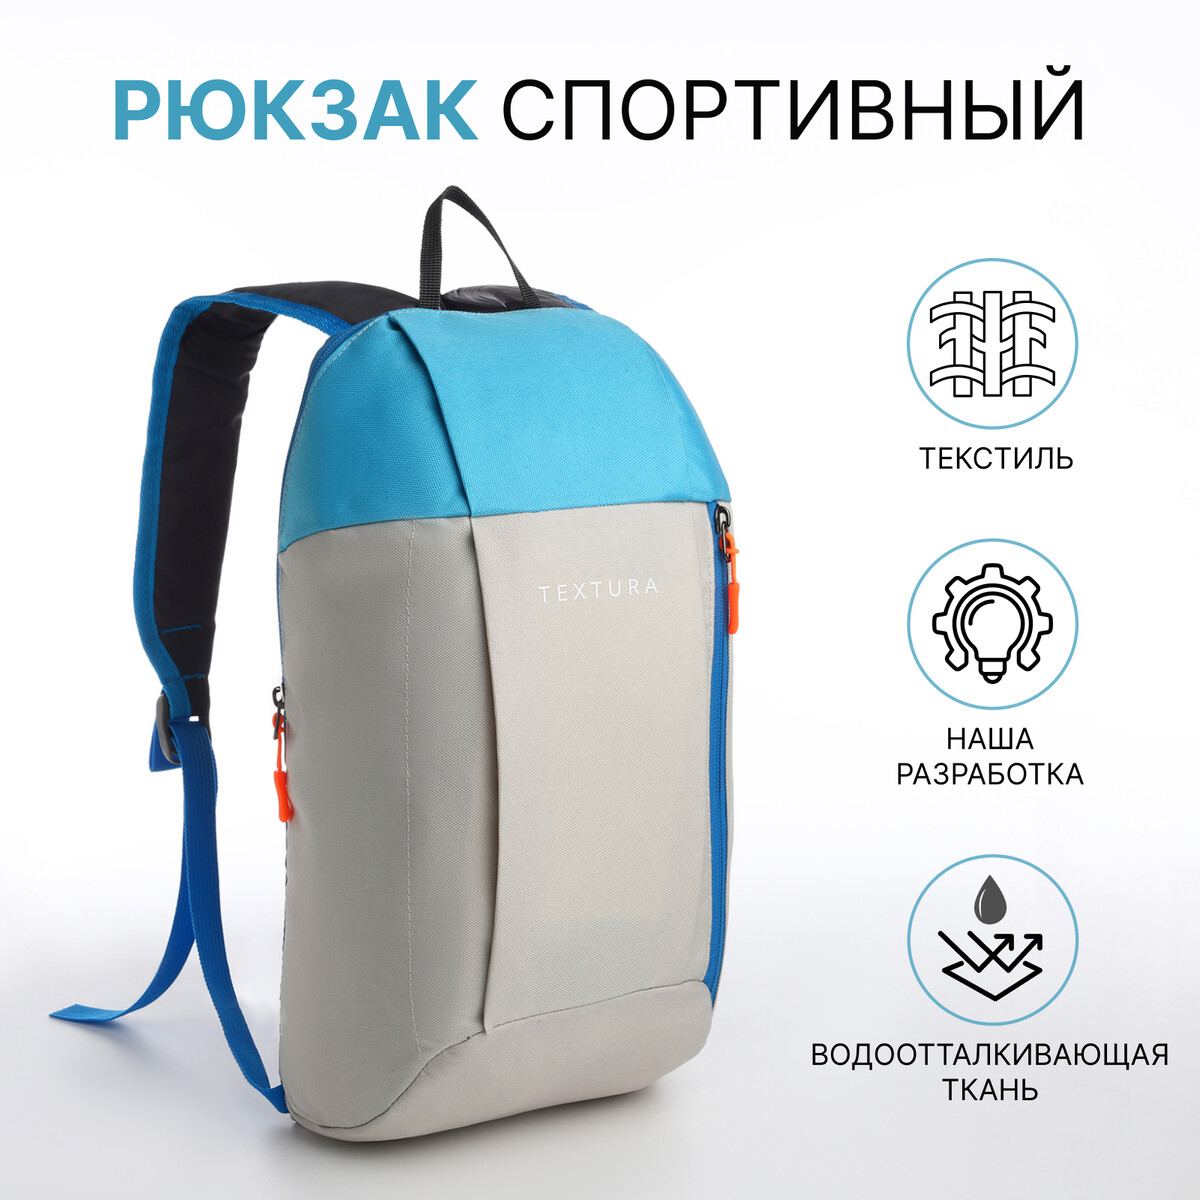 Рюкзак спортивный на молнии, textura, наружный карман, цвет бежевый/голубой TEXTURA